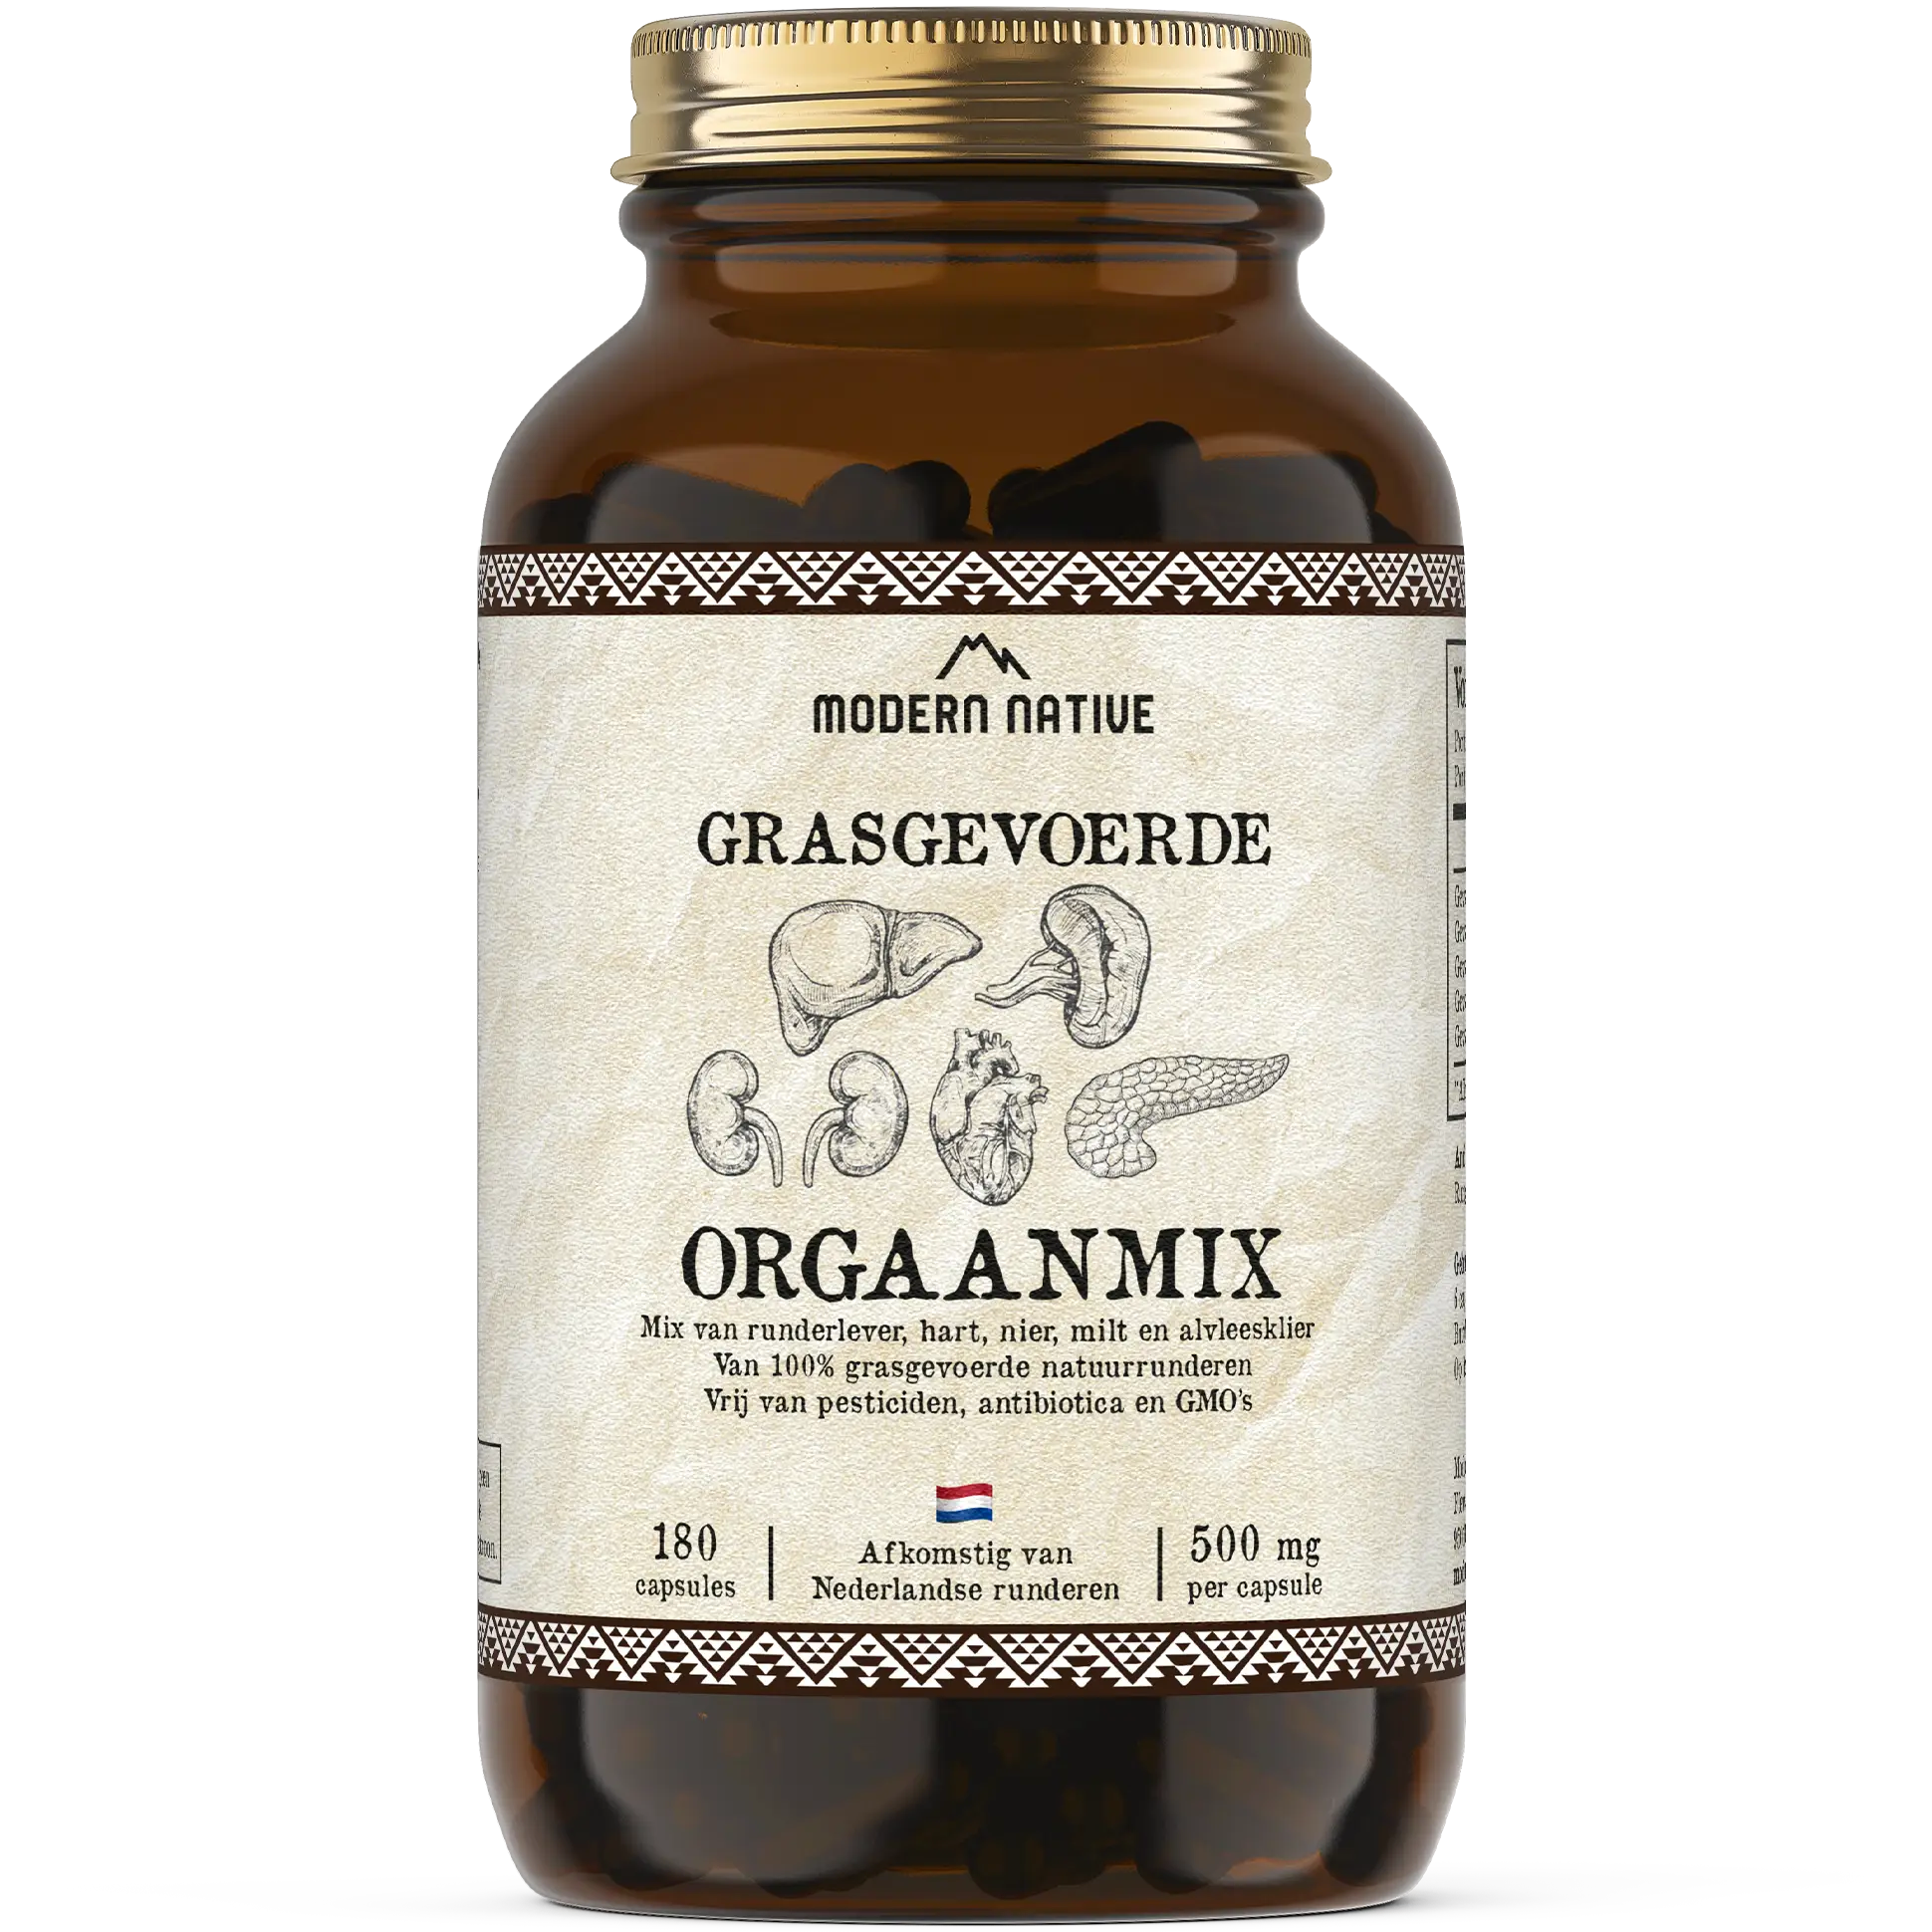 Orgaanmix als multivitamine met runderhart, lever, nier milt en alvleesklier